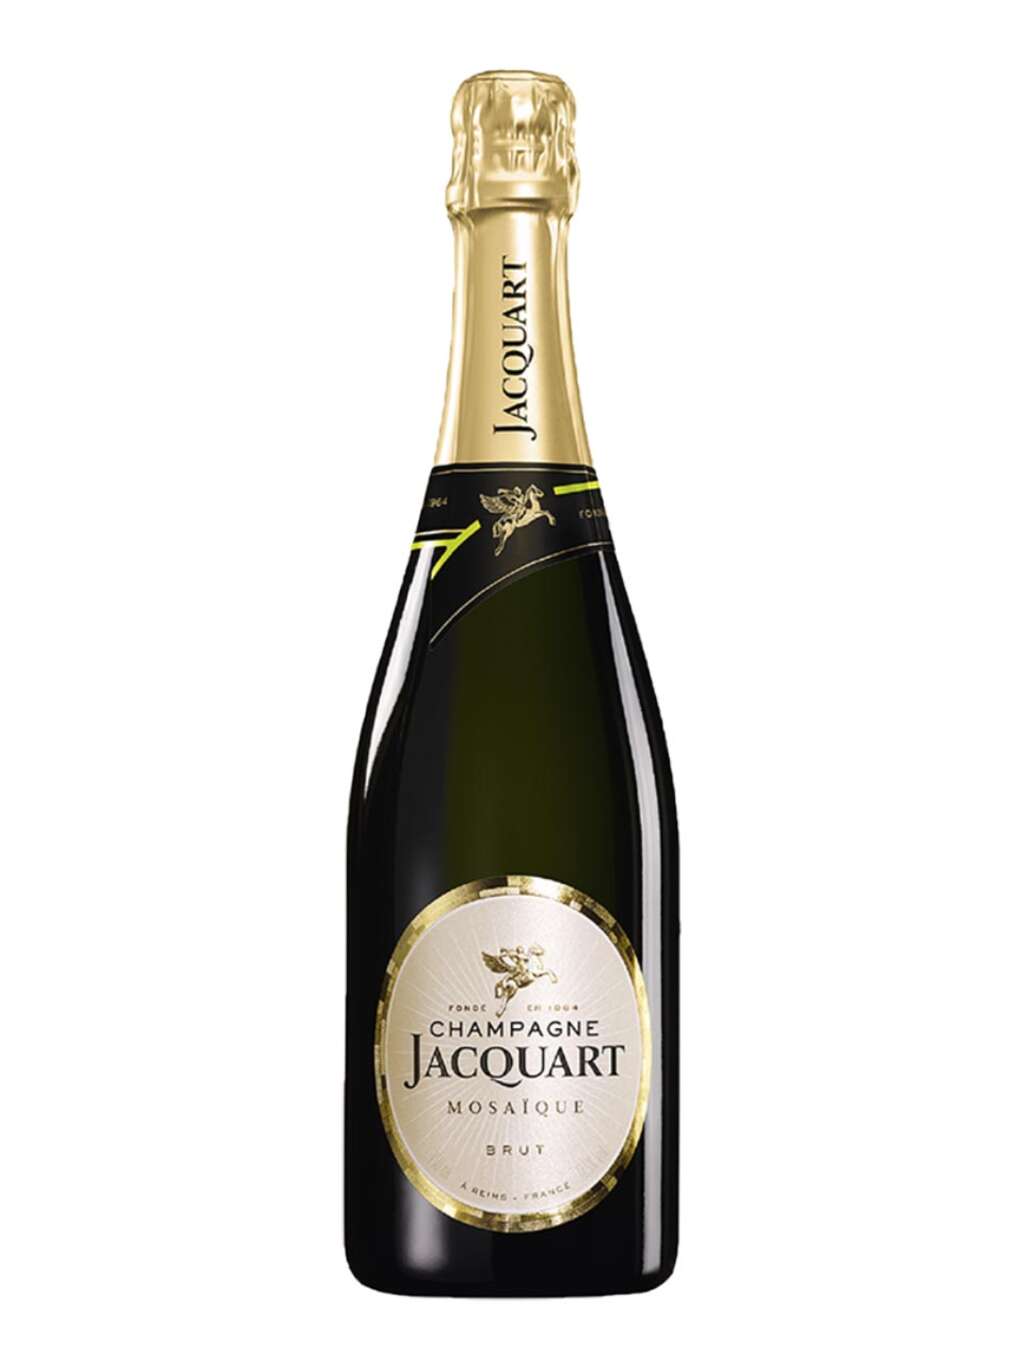 Jacquart Champagne Mosaique Brut